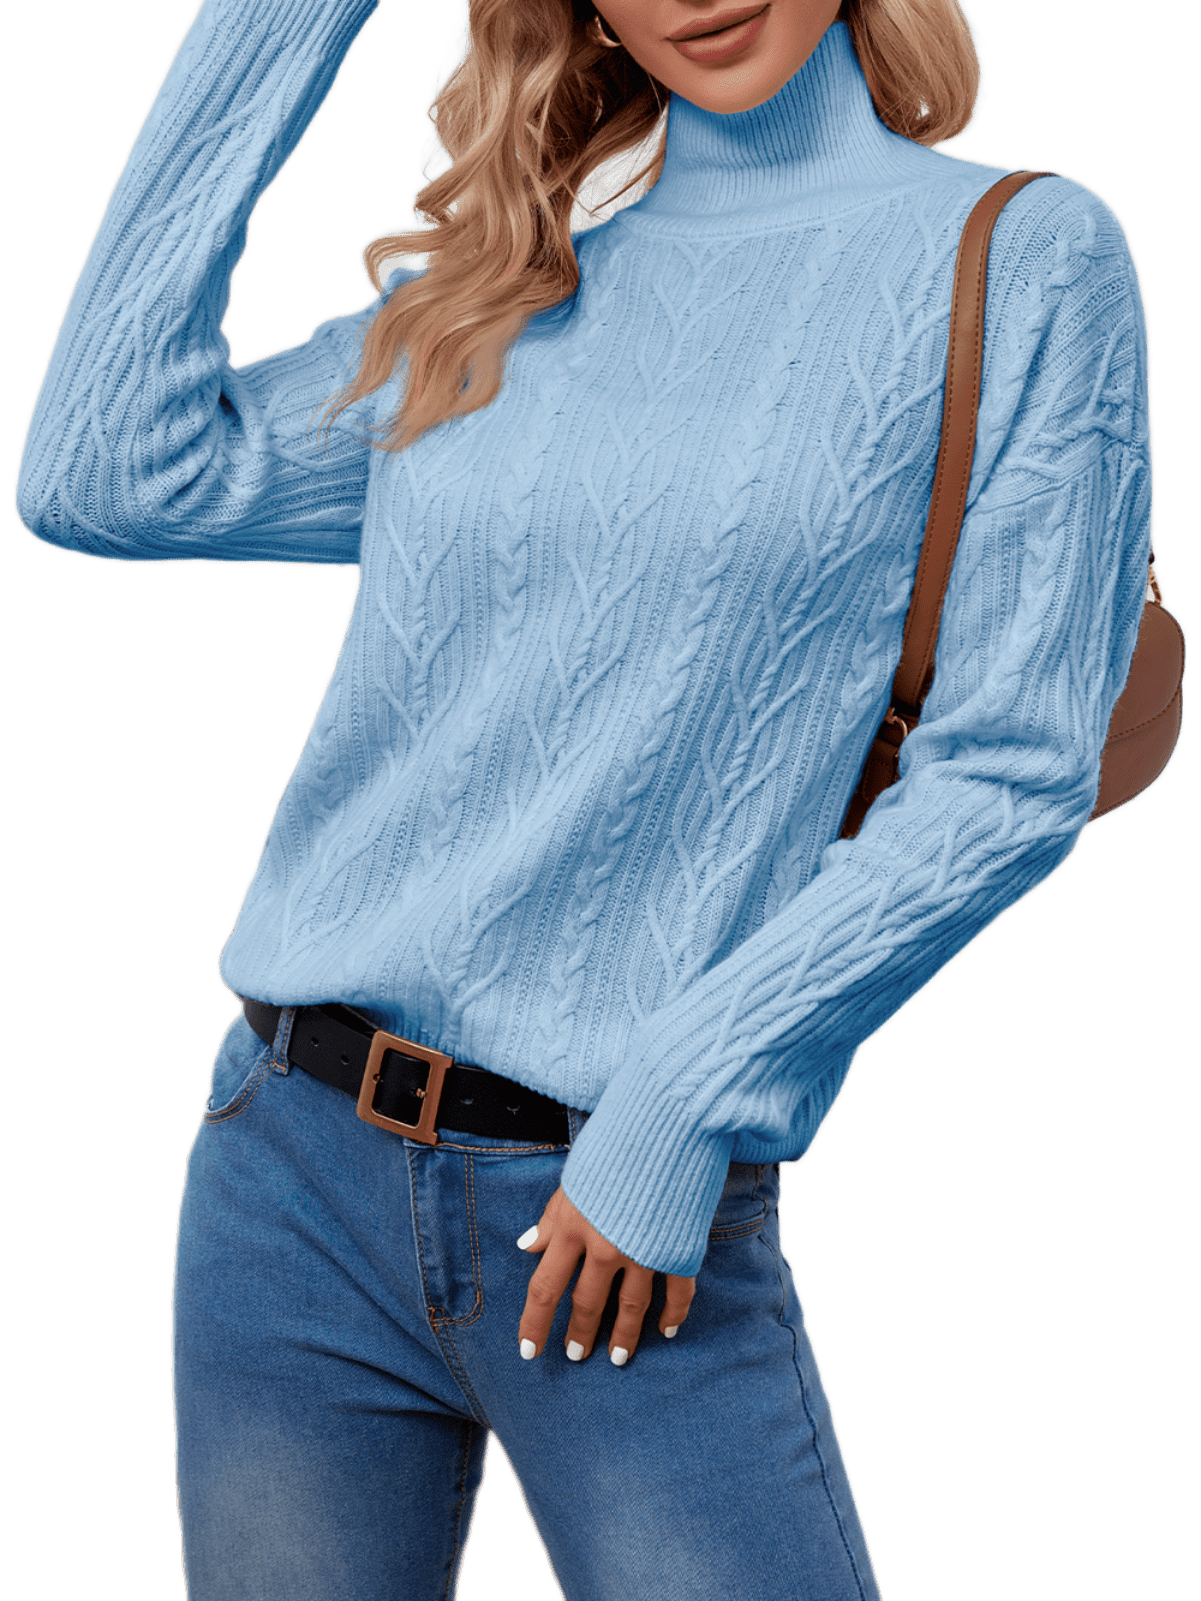 BERTHMEER Oversized Sweaters Womens Blue Turtleneck Sweaters for Women ...